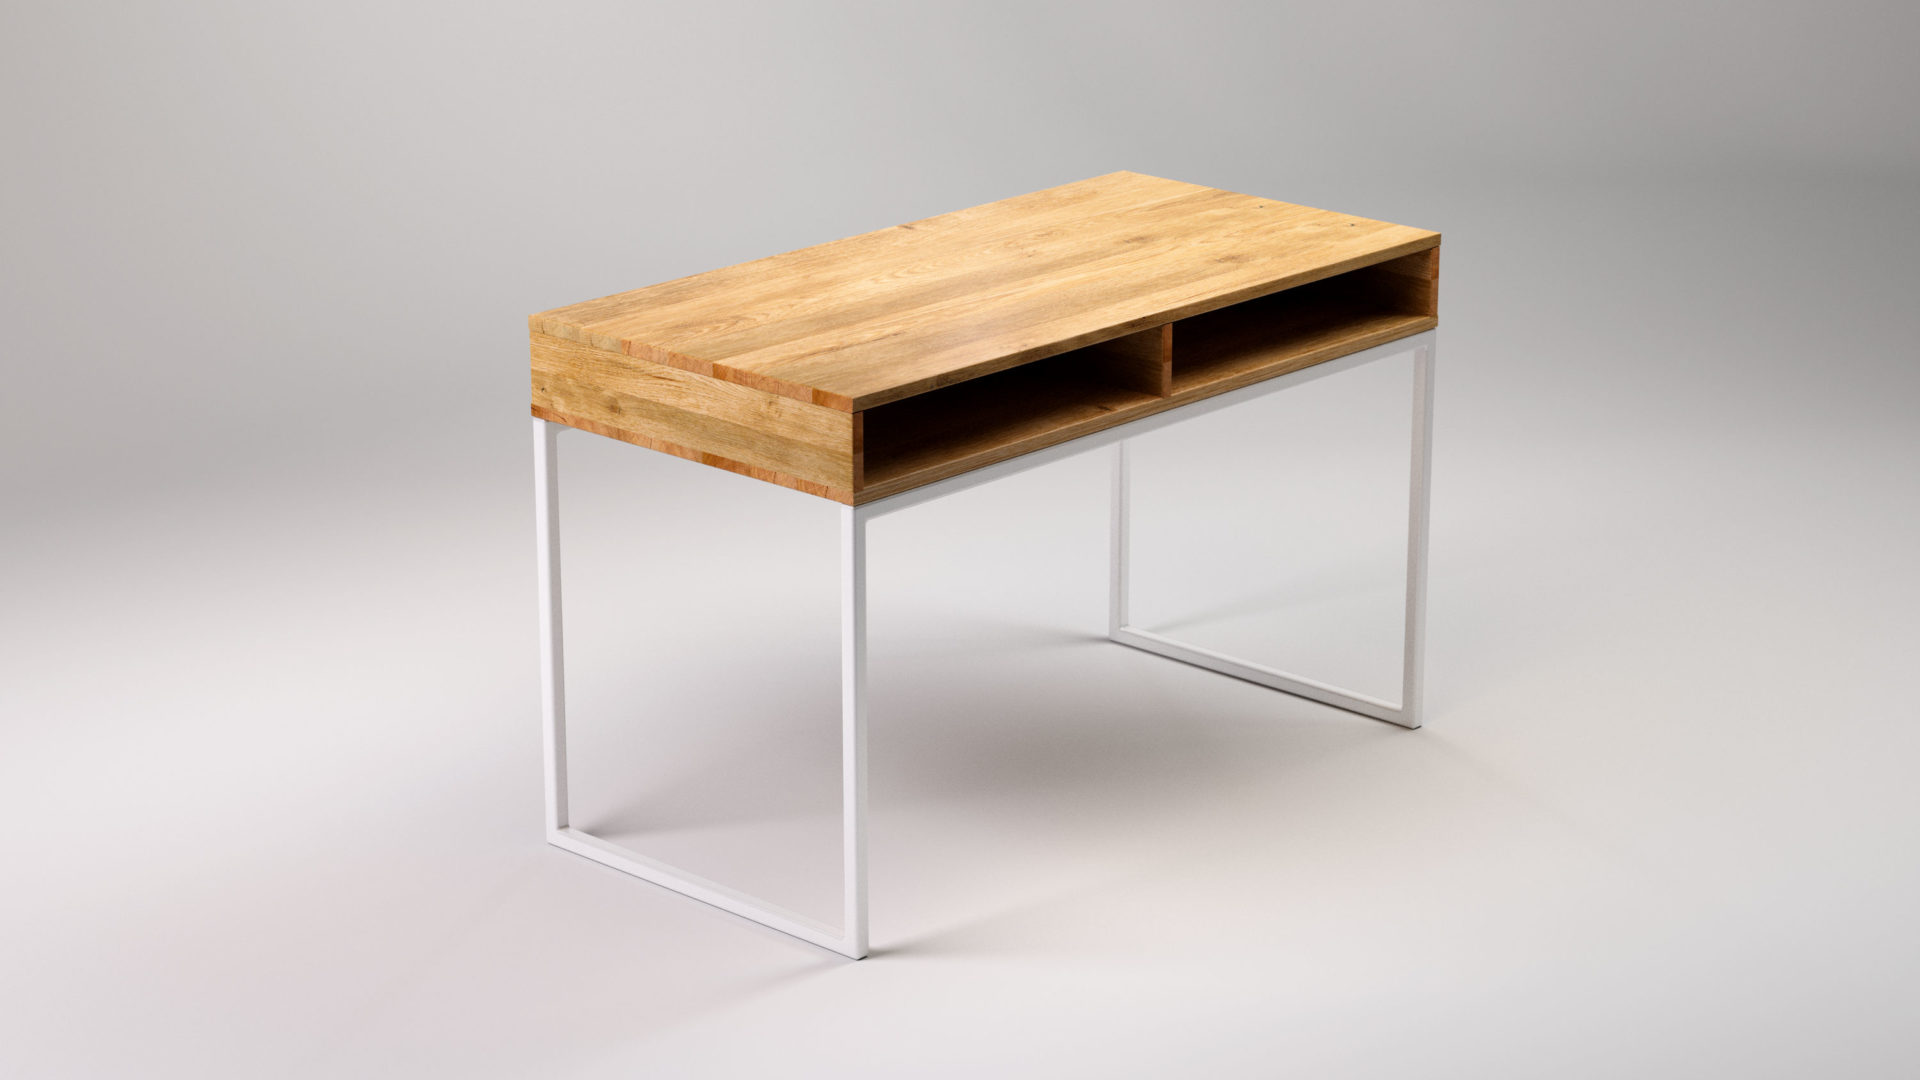 LIGHT SKRIVEN to nowoczesne biurko do biura i domu. Ręcznie wykonane z litego drewna dębowego i stali. Elegancki i minimalistyczny design.